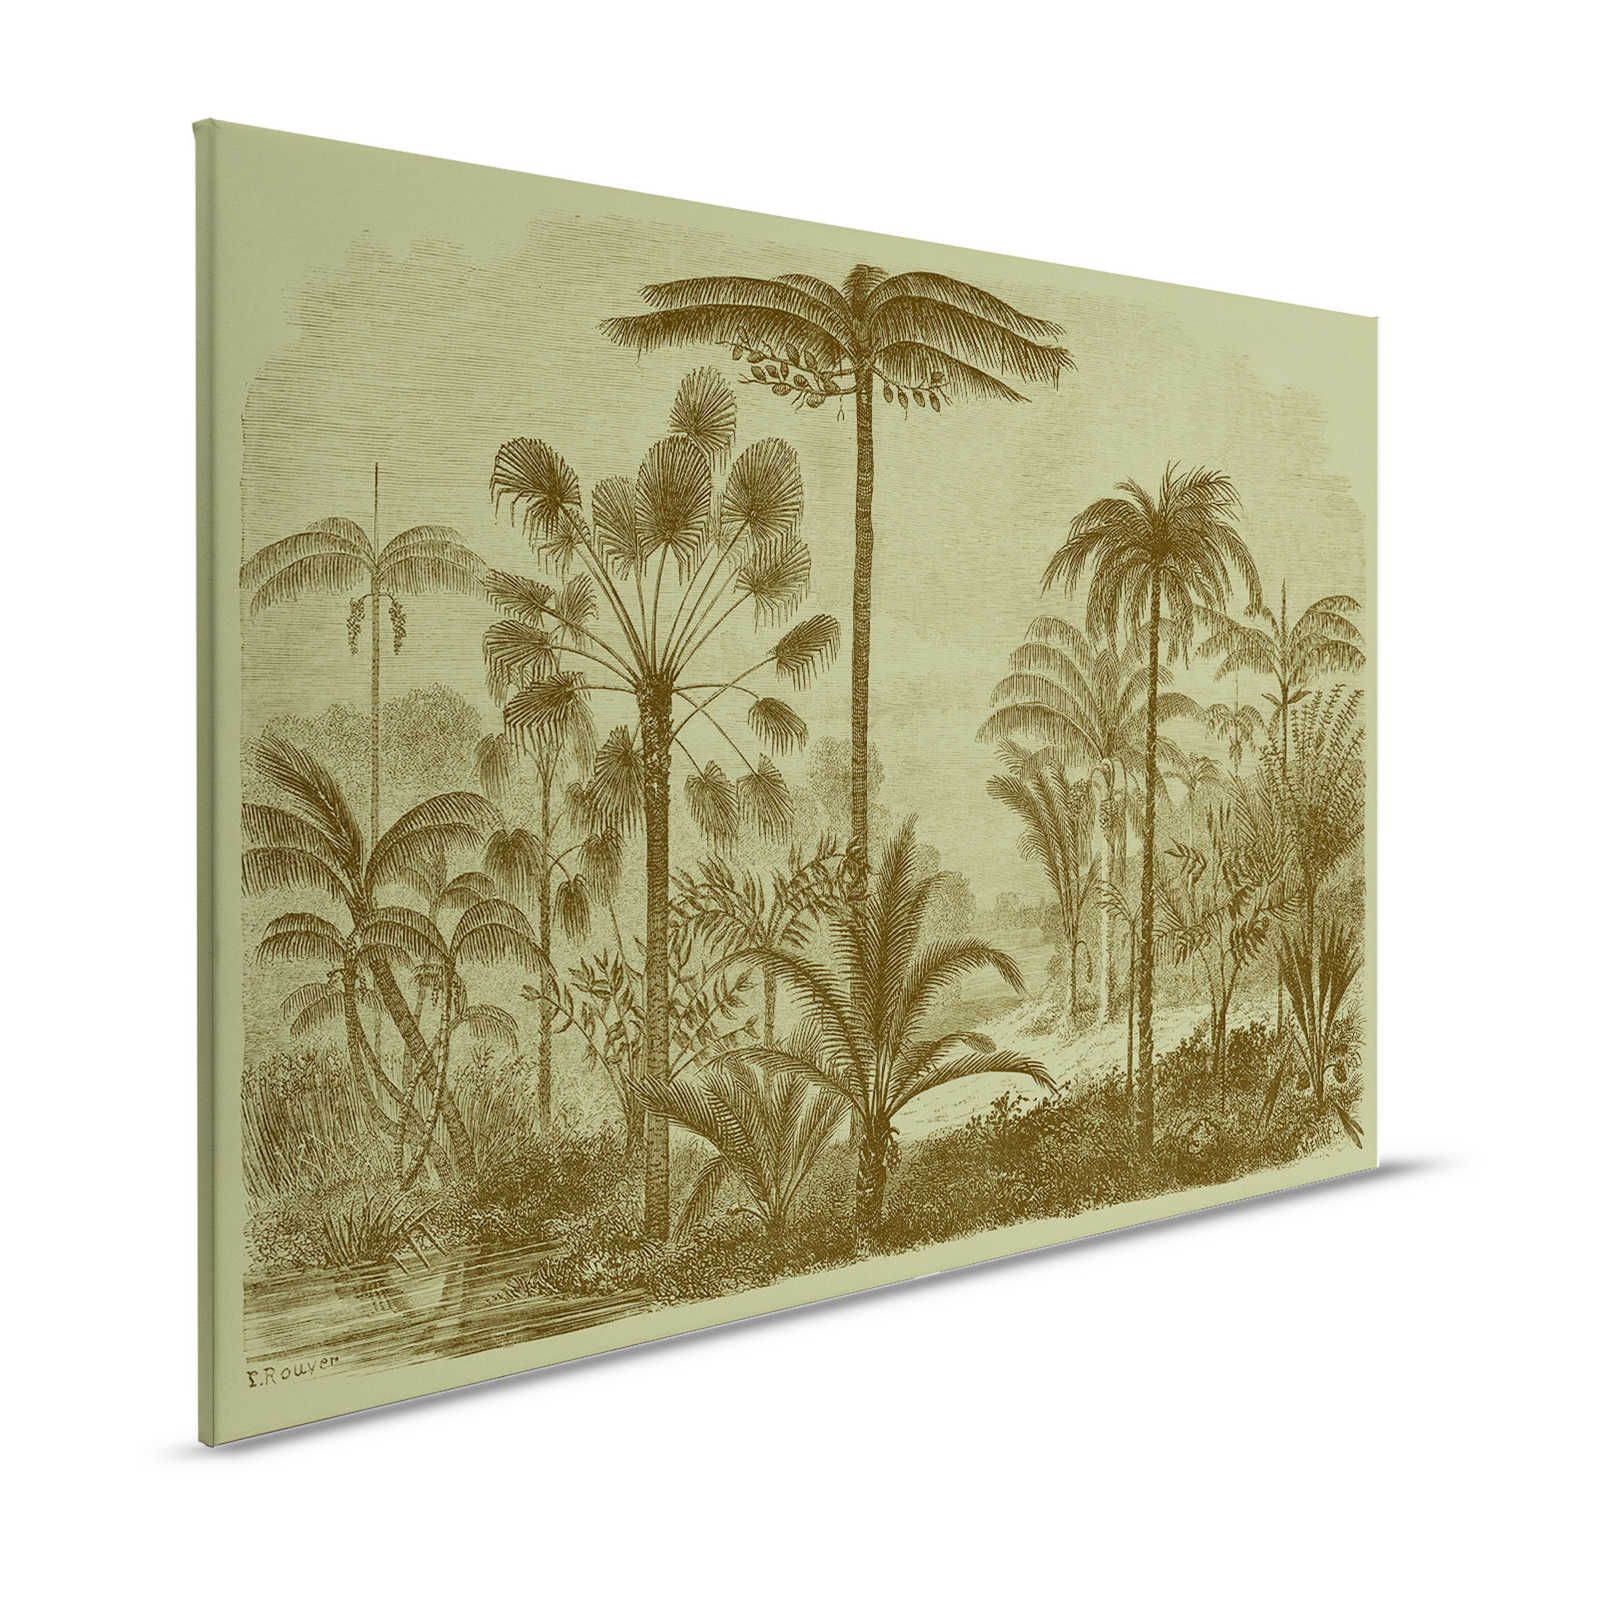 Jurassic 1 - Canvas schilderij Jungle motief Copperplate - 1.20 m x 0.80 m
